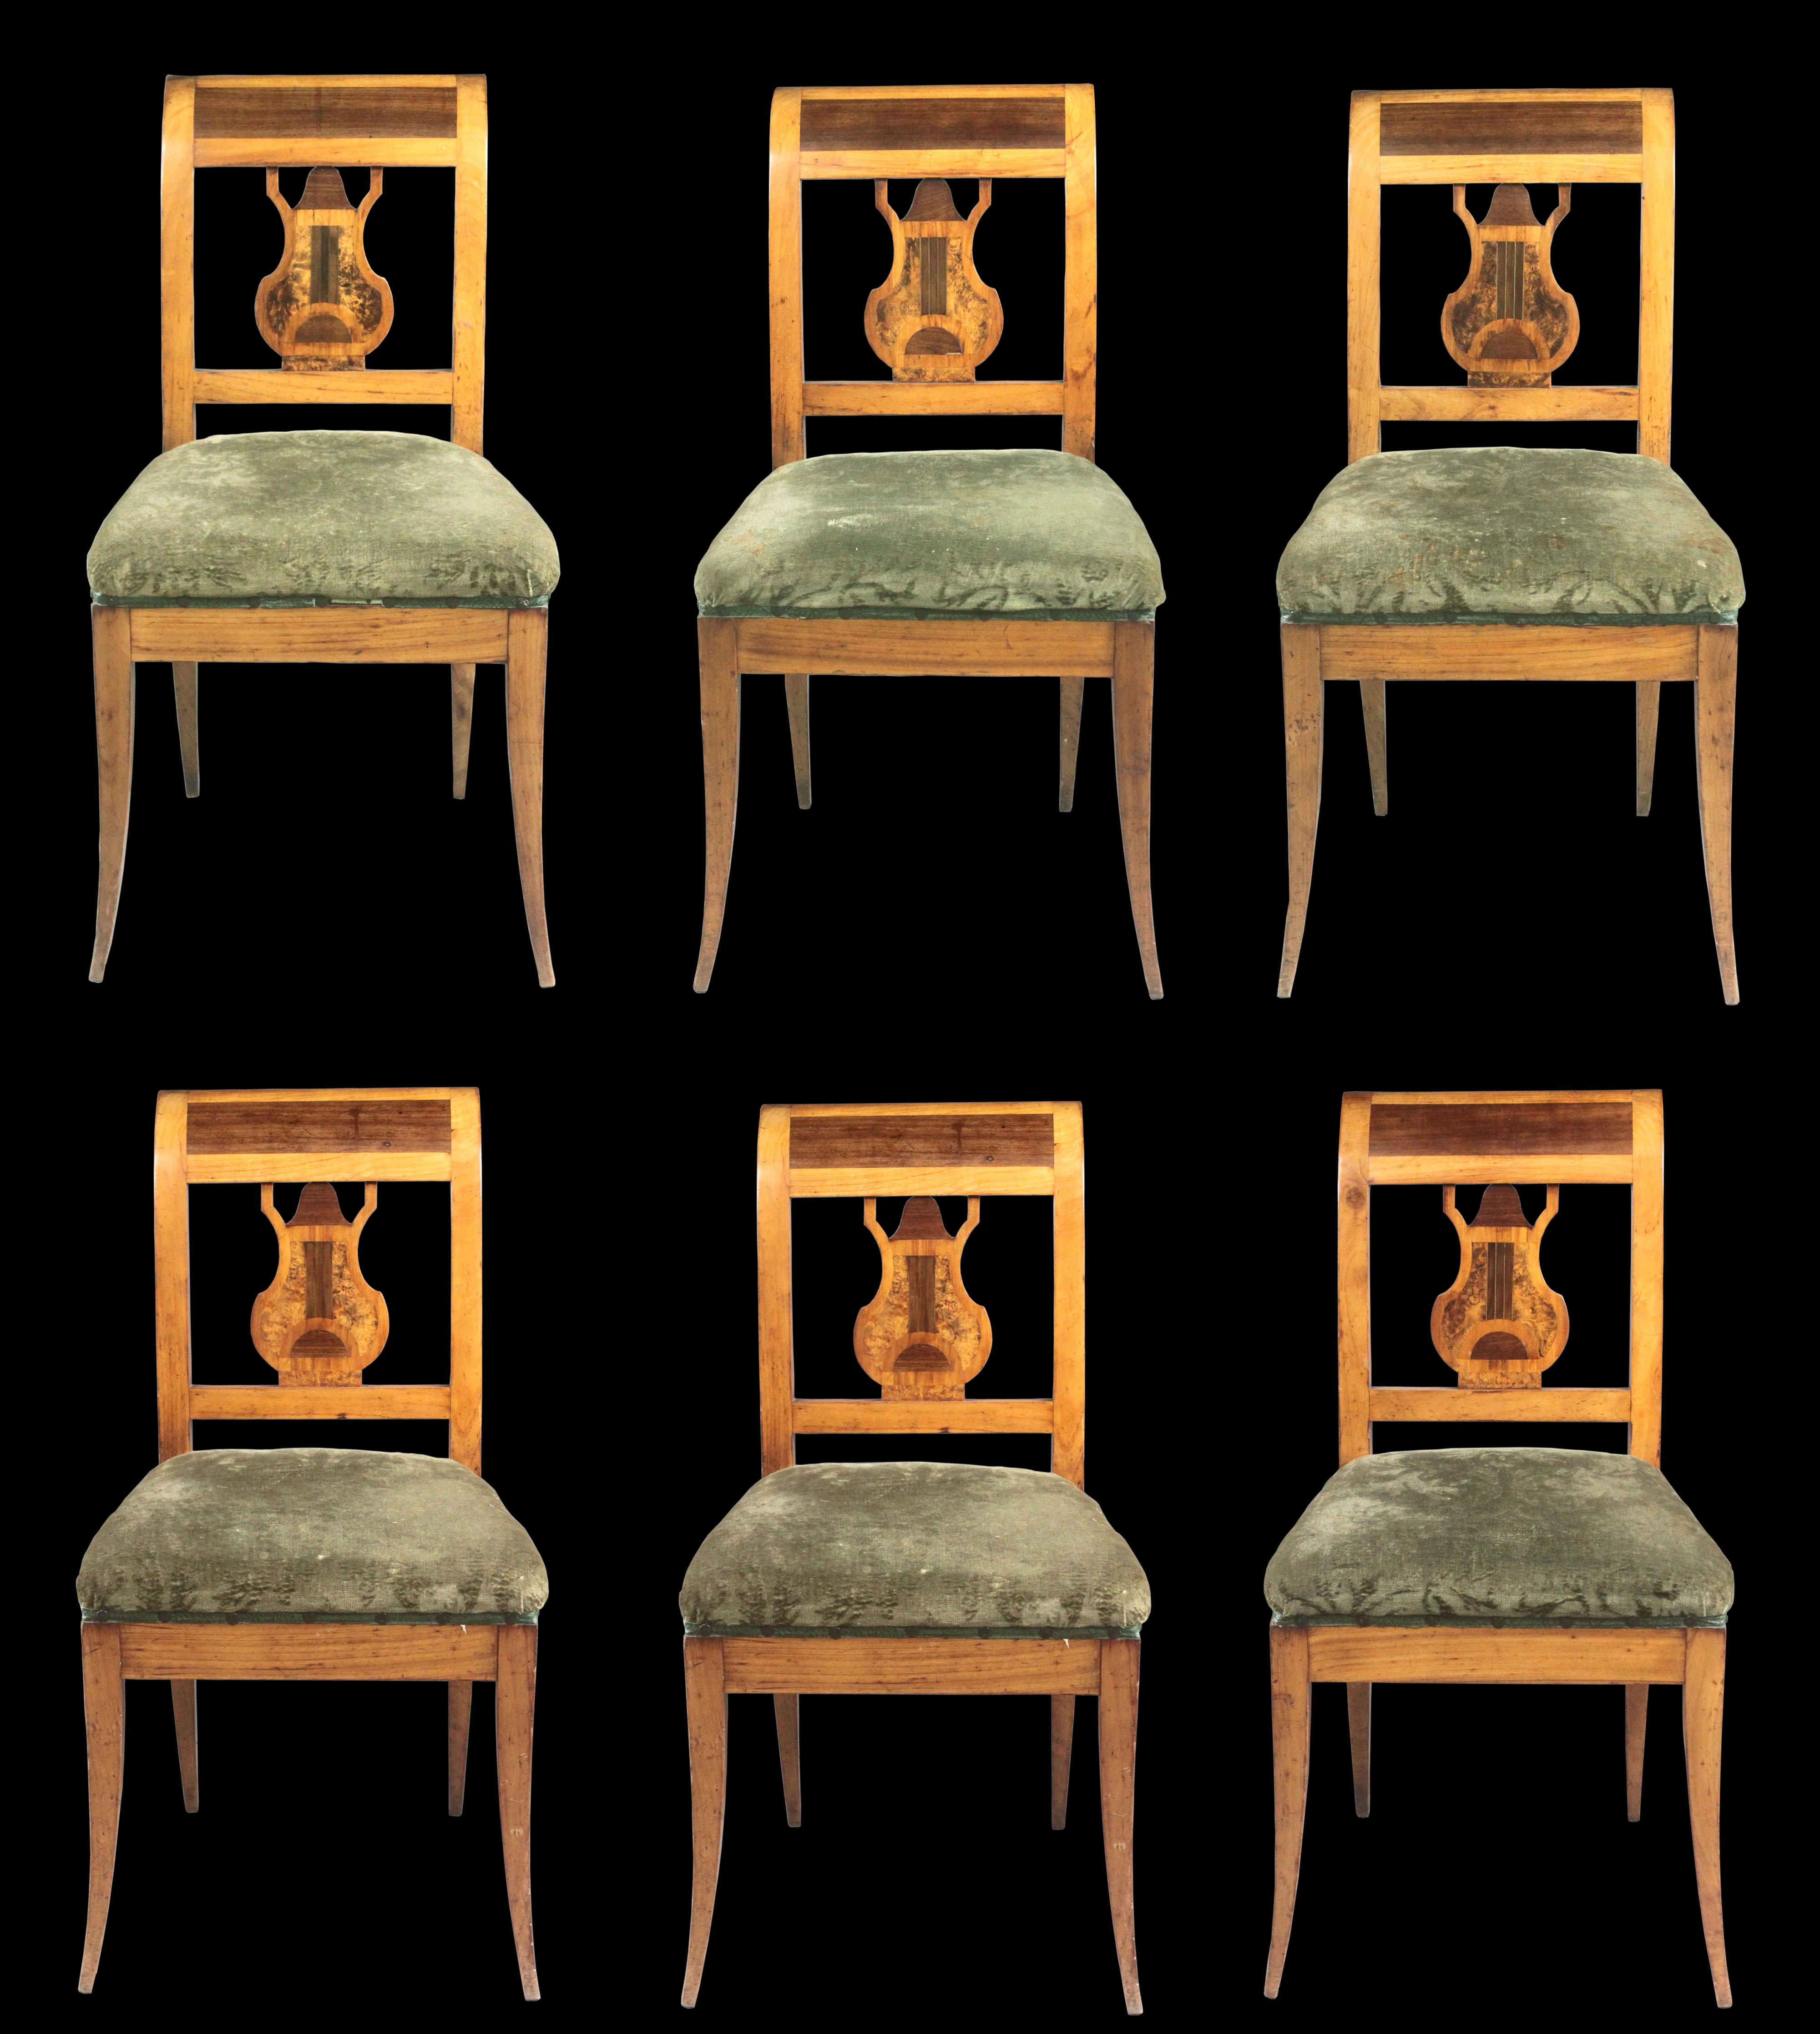 Satz von sechs Biedermeier-Stühlen
Ein attraktives Set von sechs Biedermeier-Stühlen aus Obstholz mit schön gearbeiteten Leier-Rückenlehnen aus Wurzeleschen- und Kirschholzfurnier.
Das Motiv der Leierrücken hat seinen Ursprung im klassischen